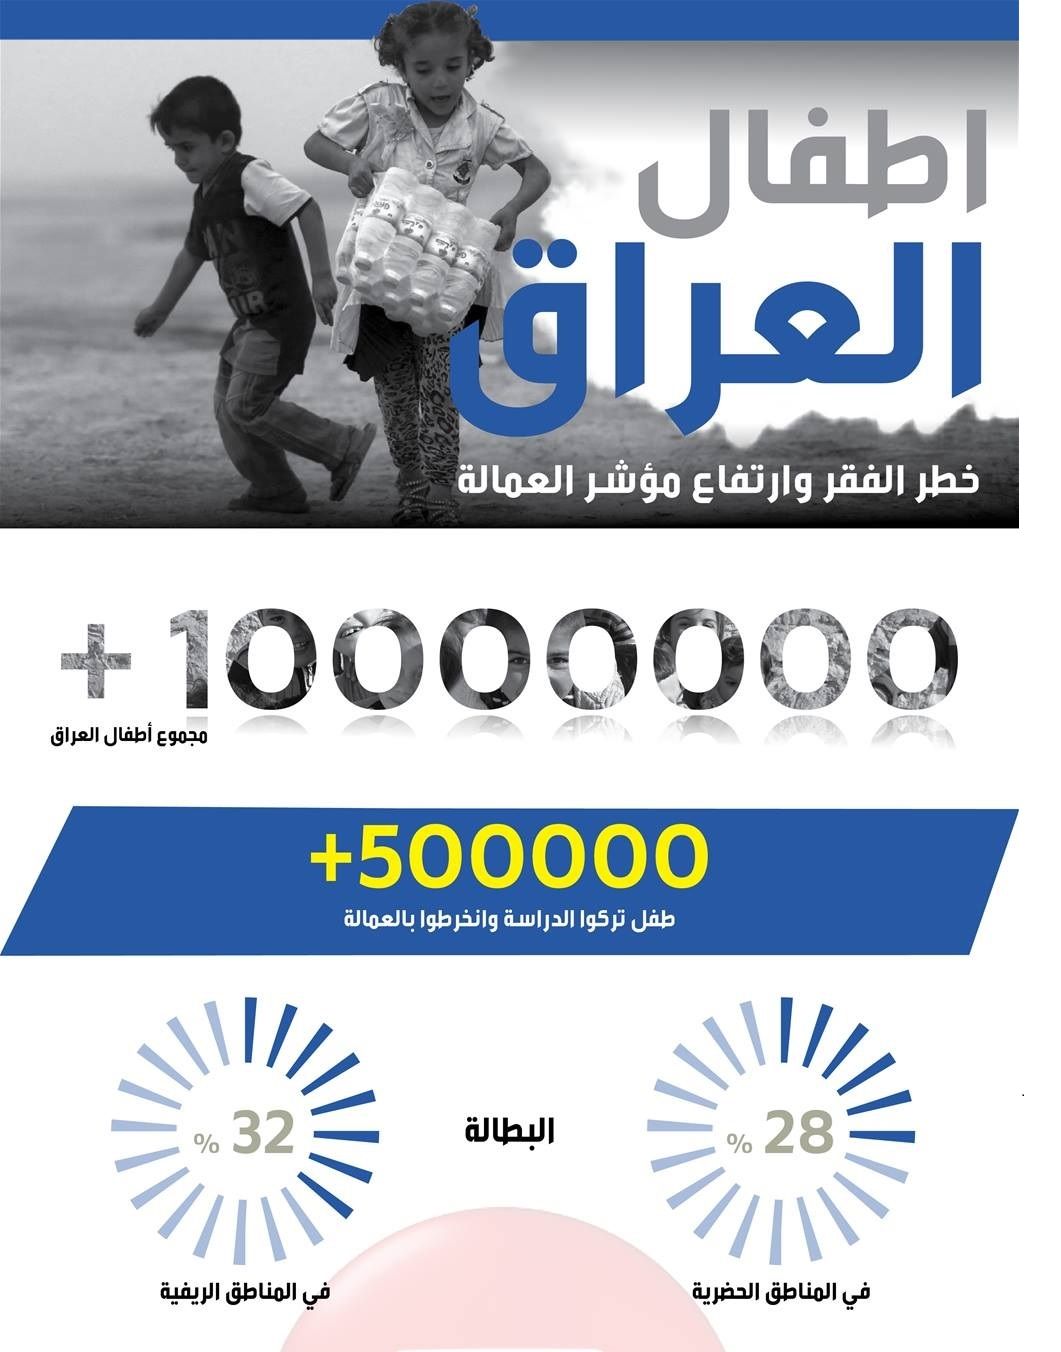 ۵۰۰ هزار کودک عراقی از تحصیل محرومند + عکس